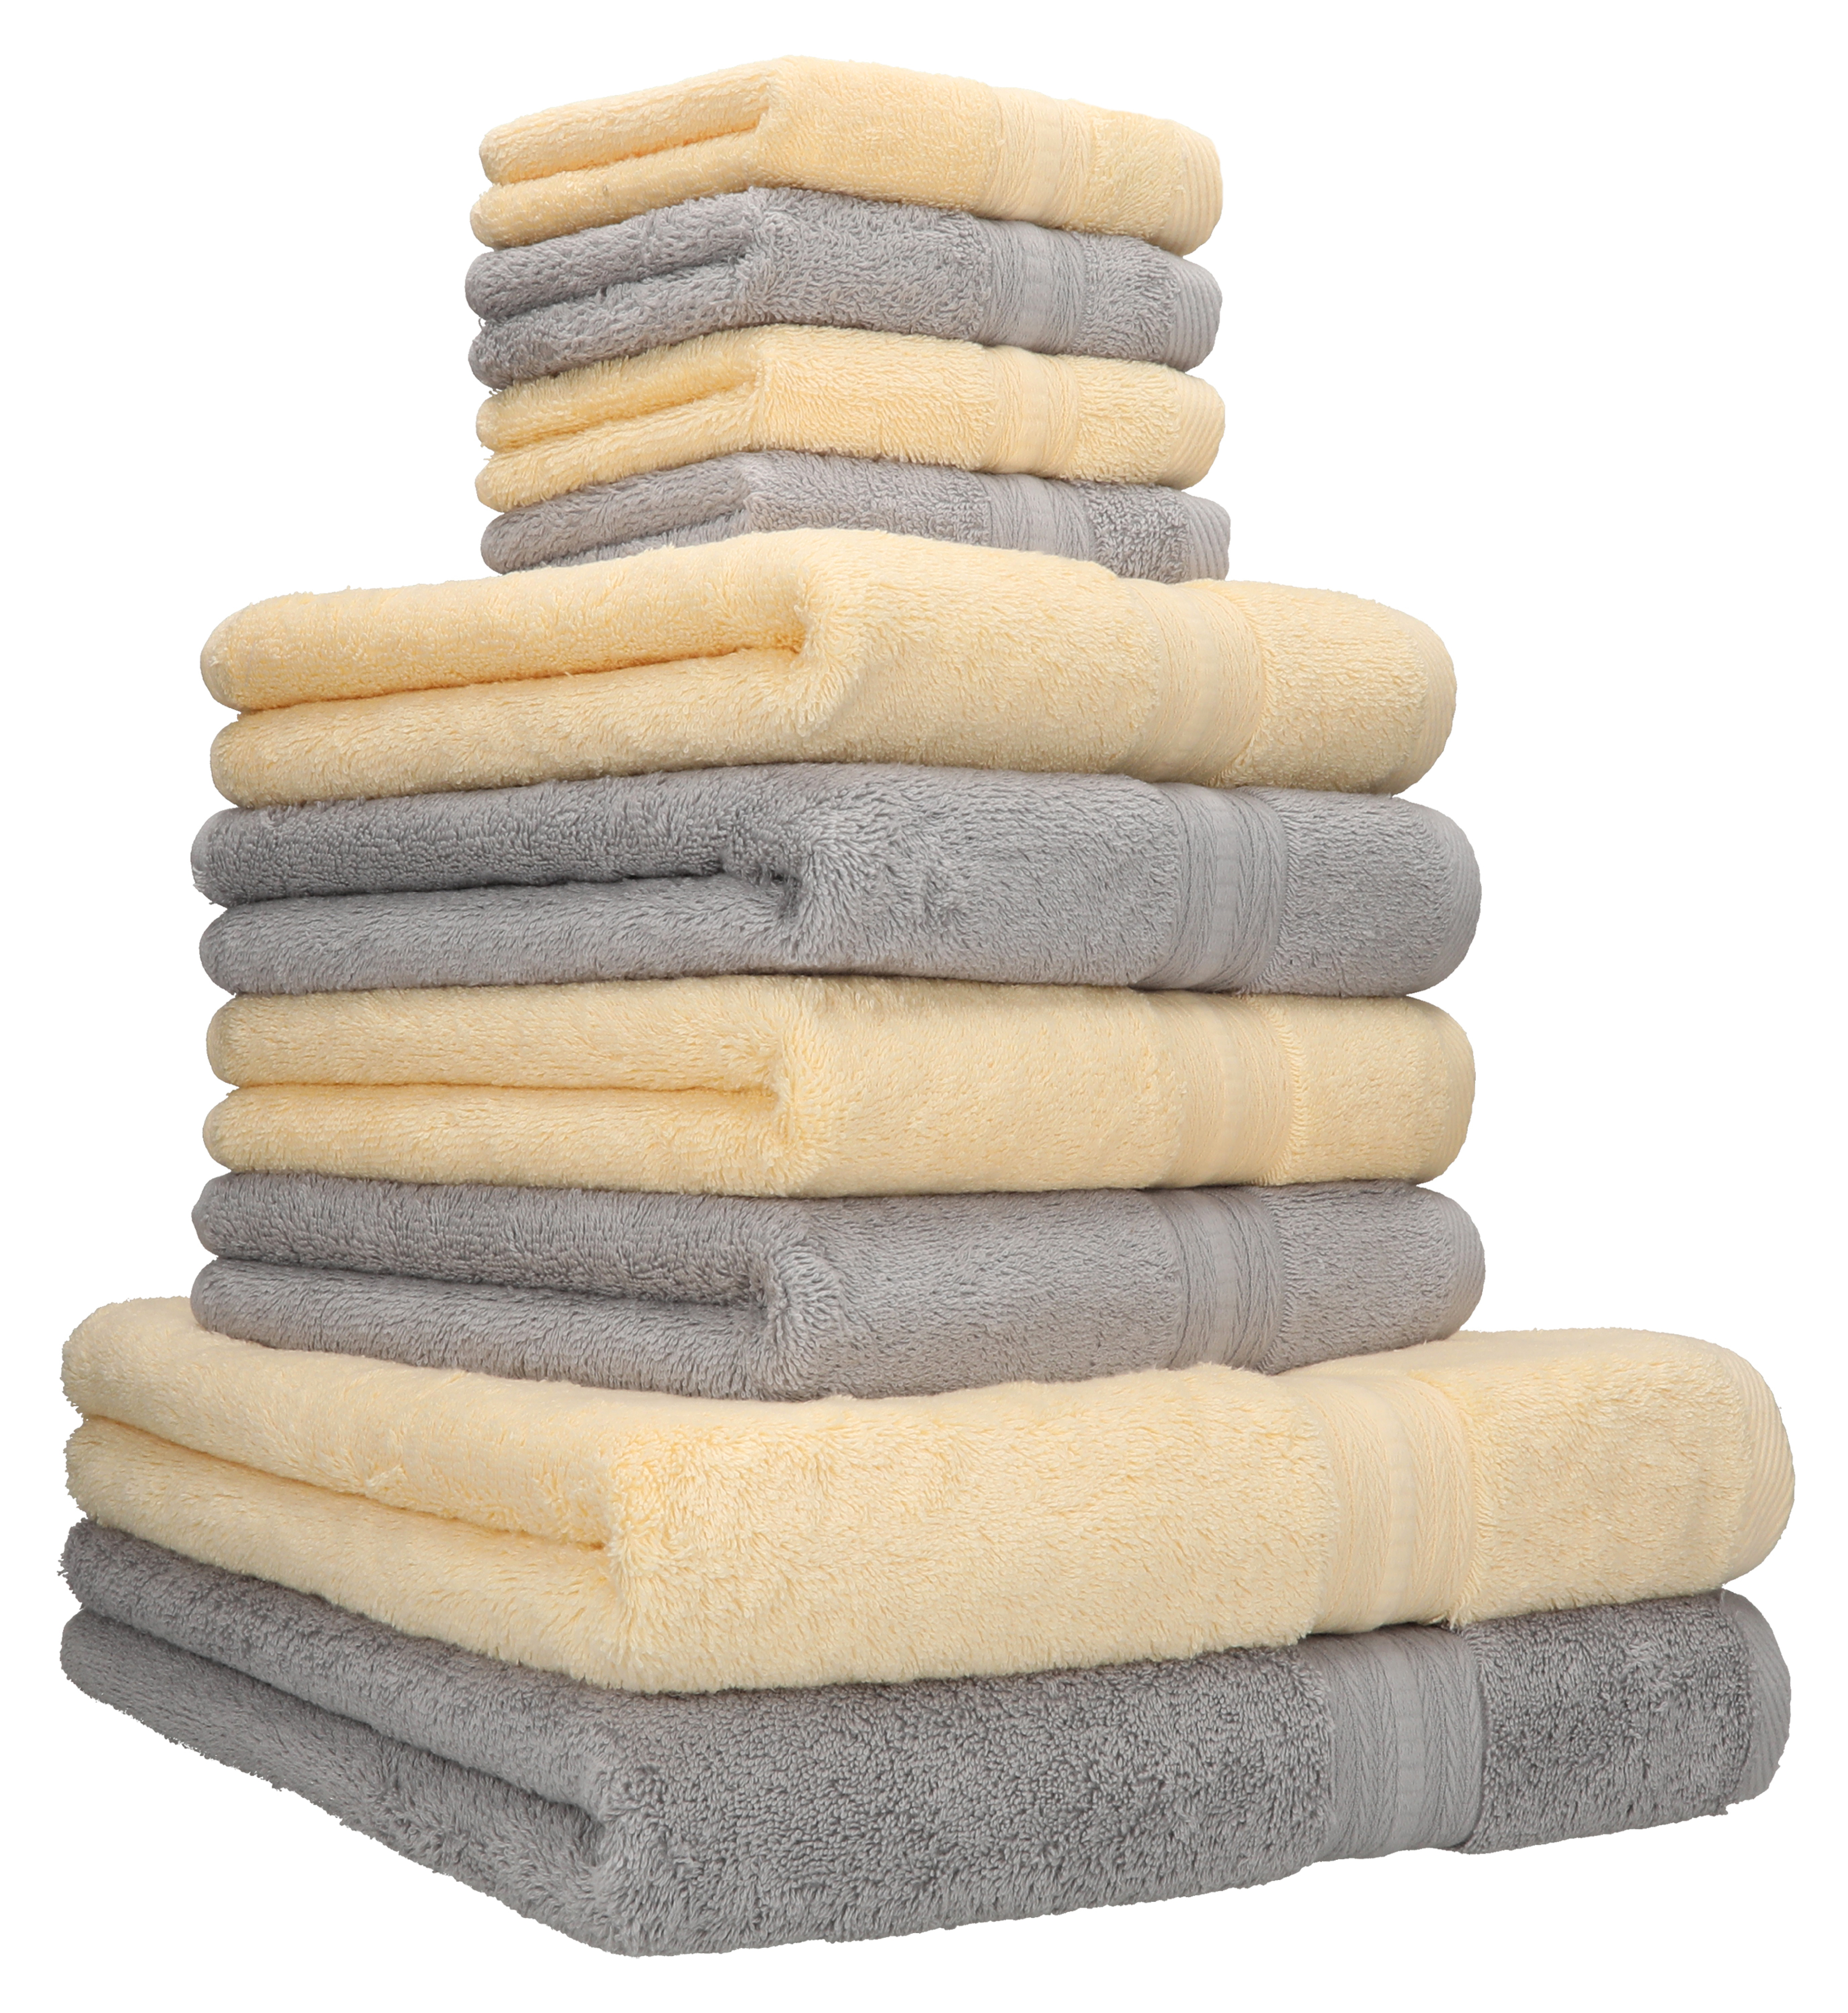 Betz 10-tlg. Handtuch-Set GOLD Luxus 600g/m² Qualität Duschtücher 100% Baumwolle 2 4